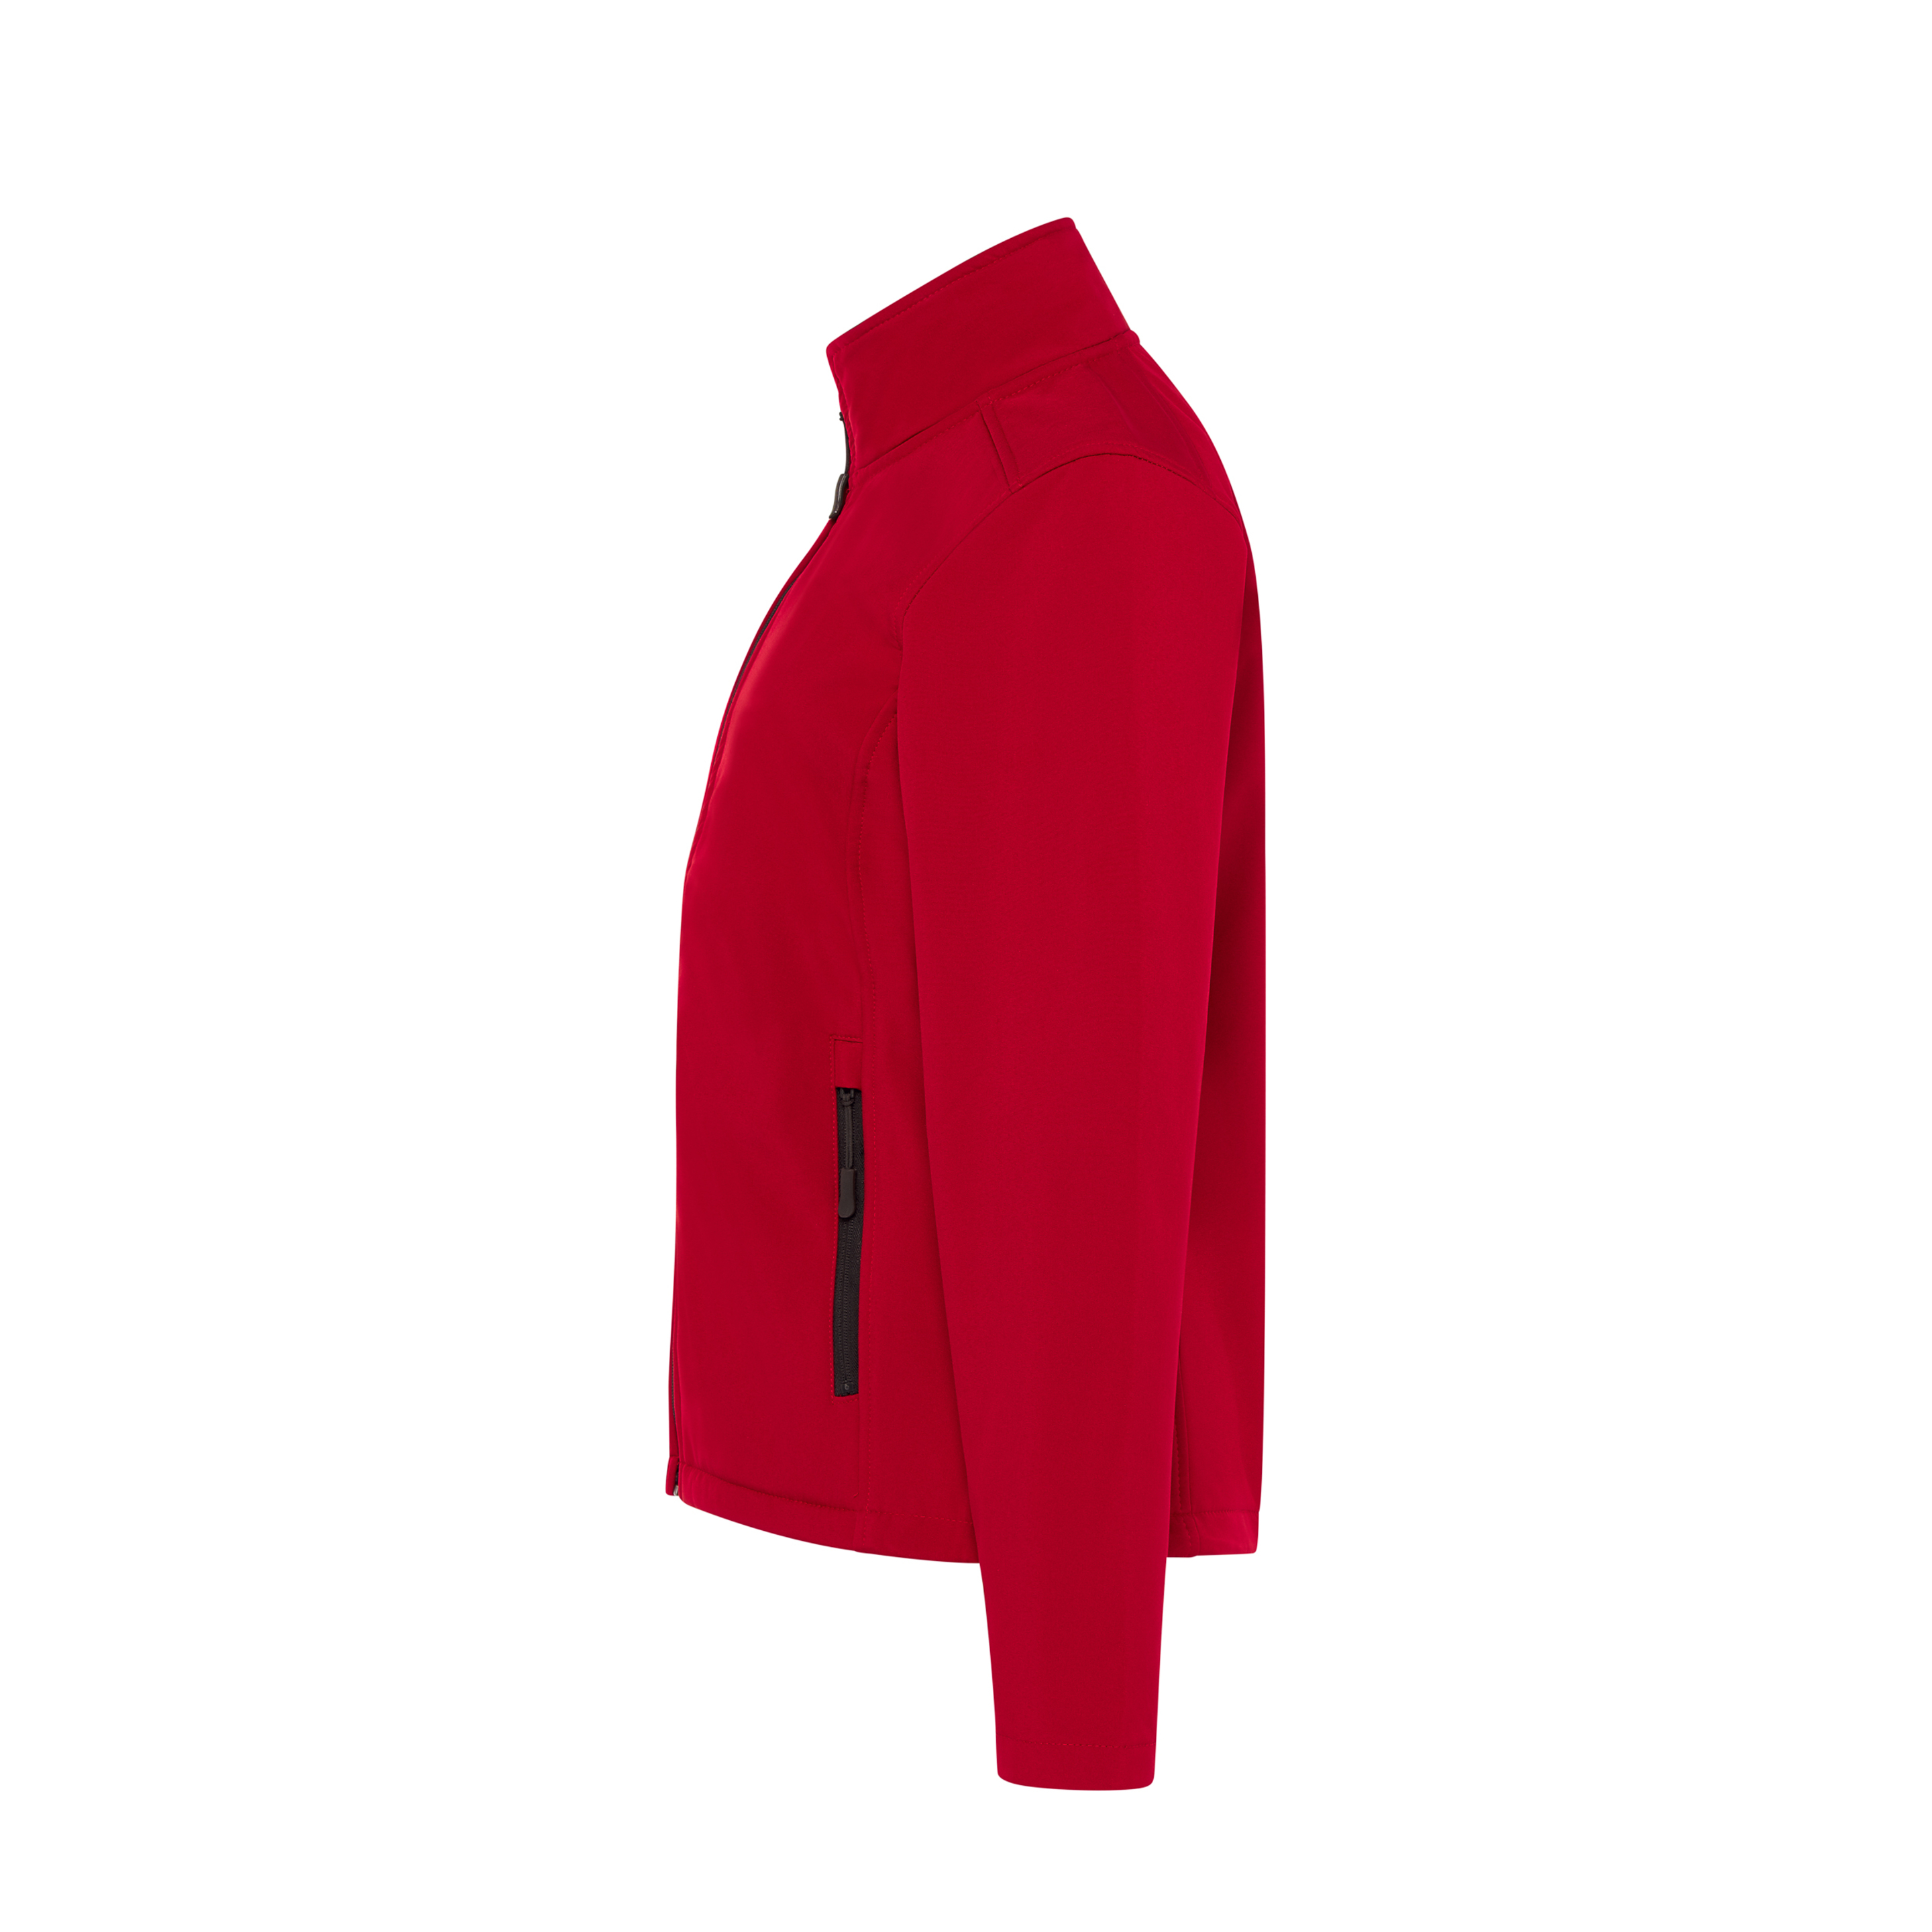 Chaqueta Softshell Jacket Jhk Shirts - Rojo  MKP